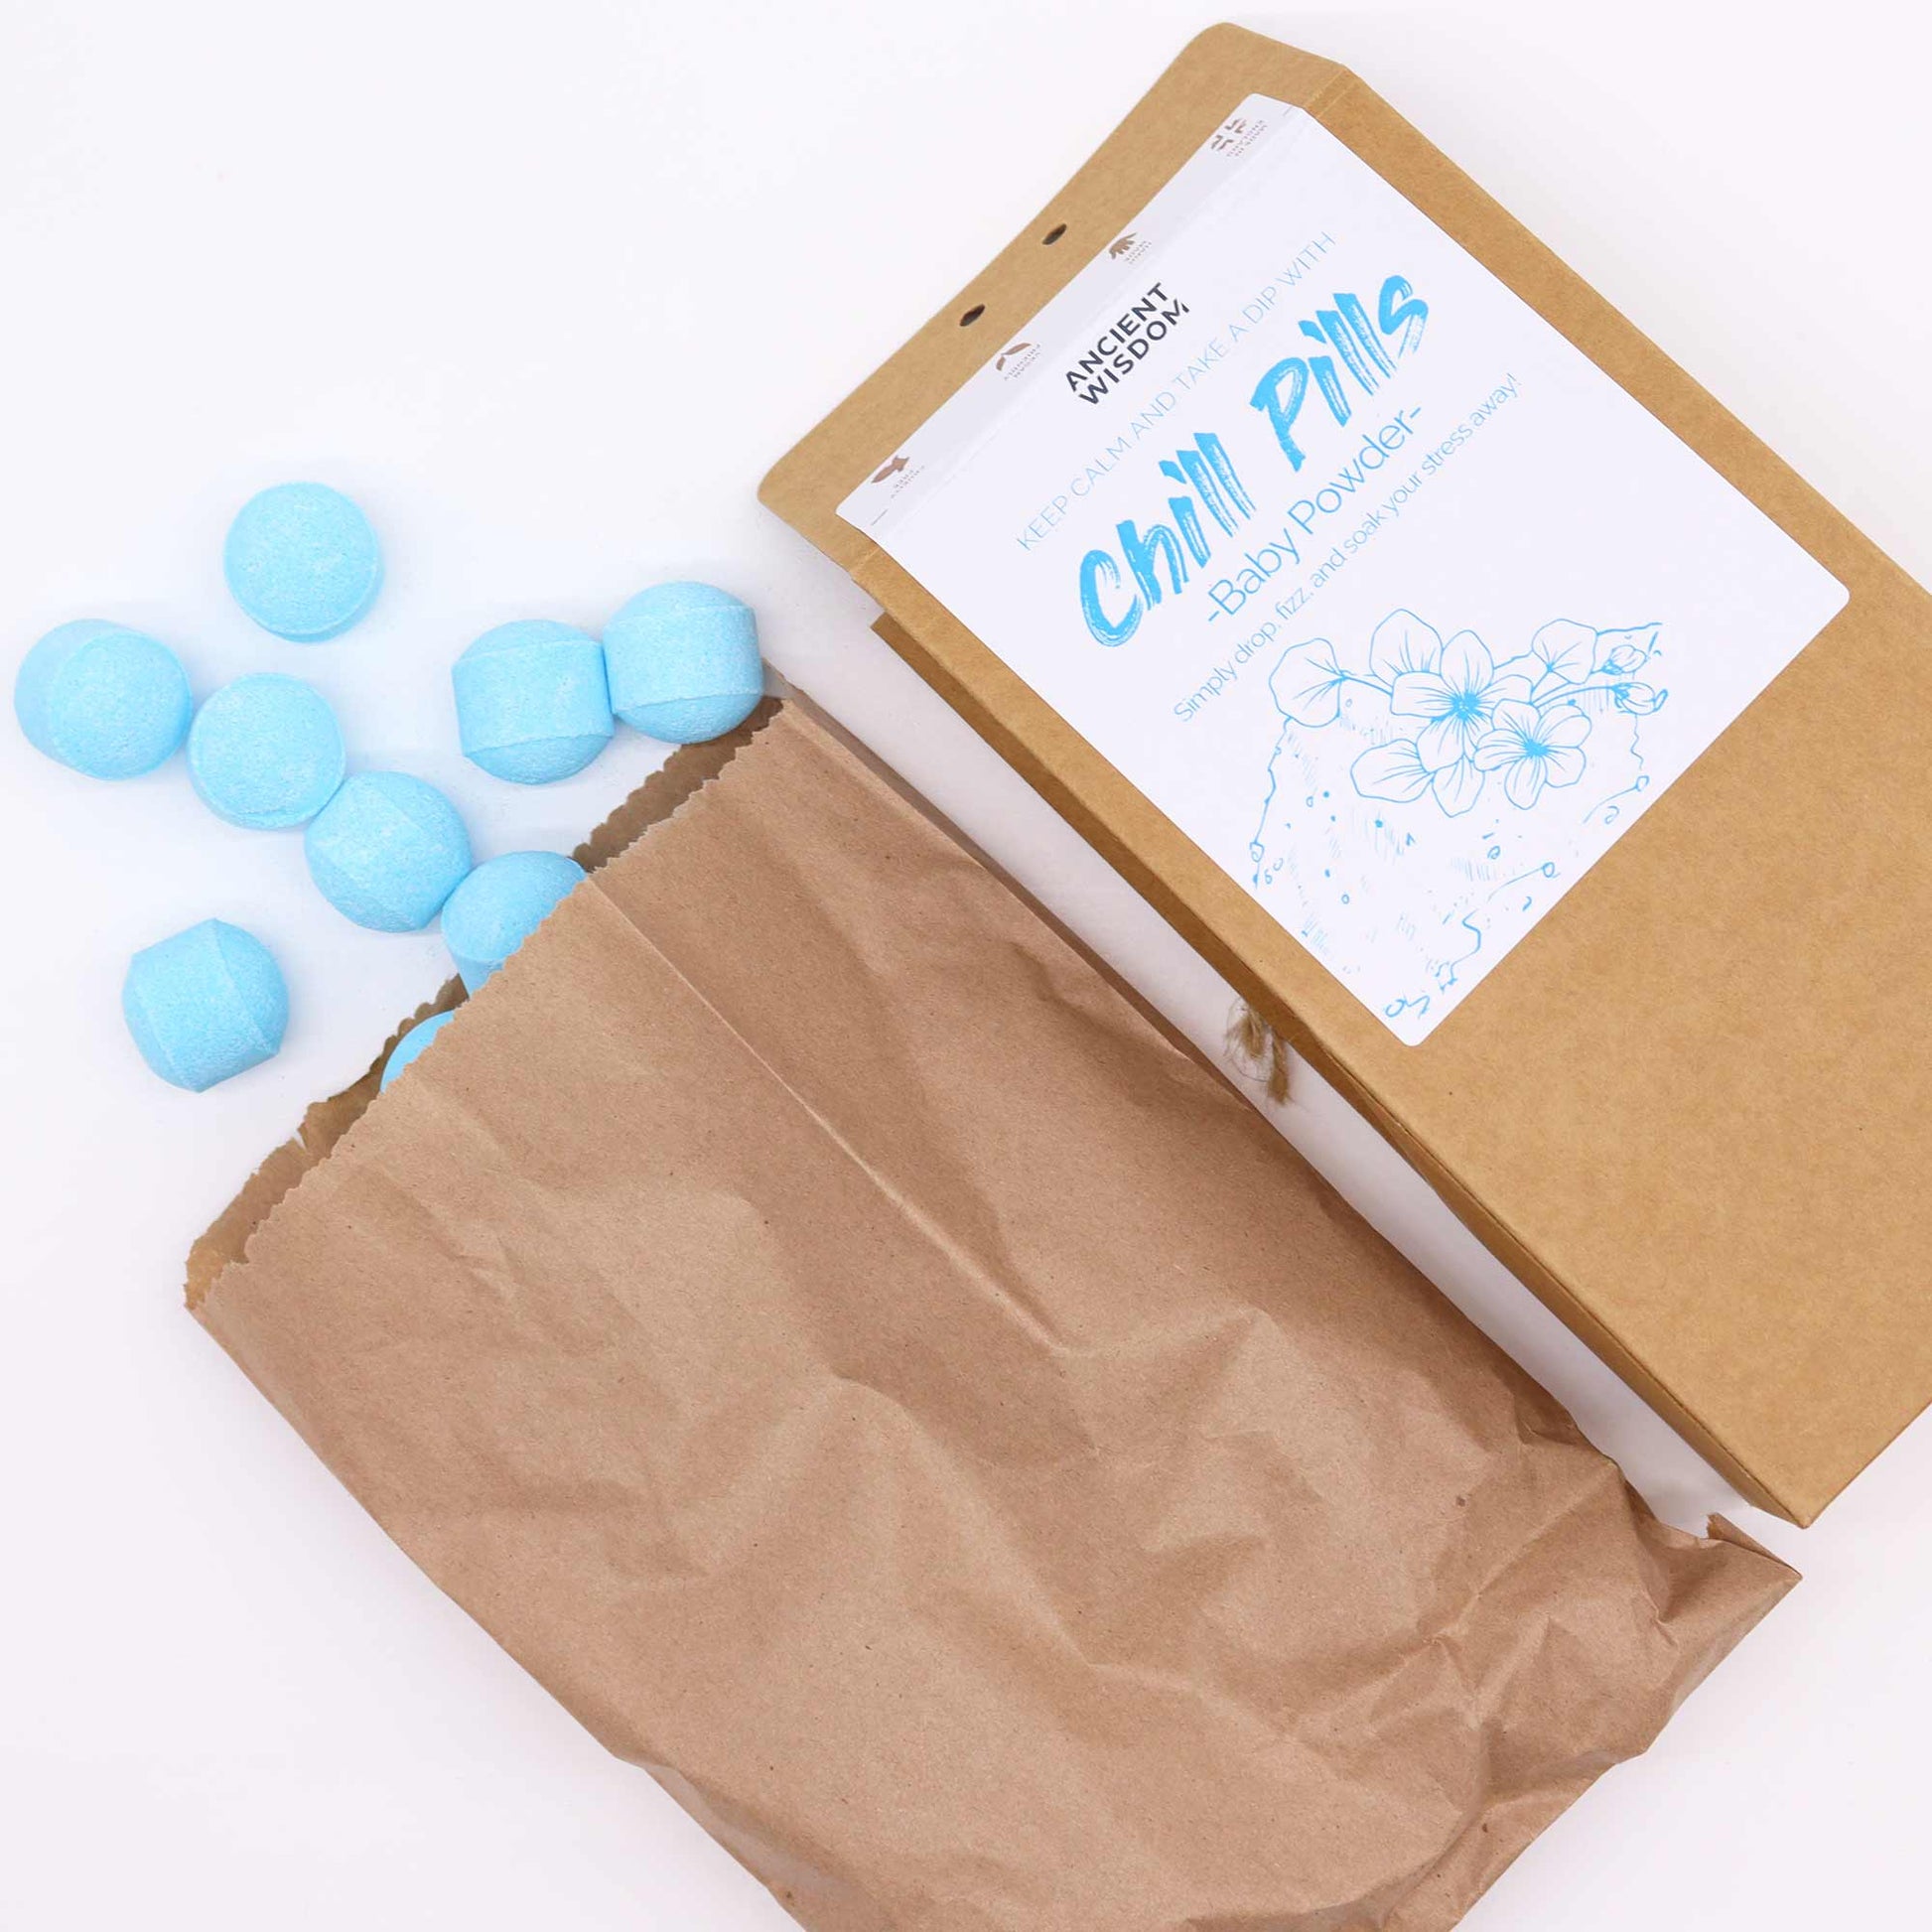 Chill Pills Gift Pack 350g - Baby Powder